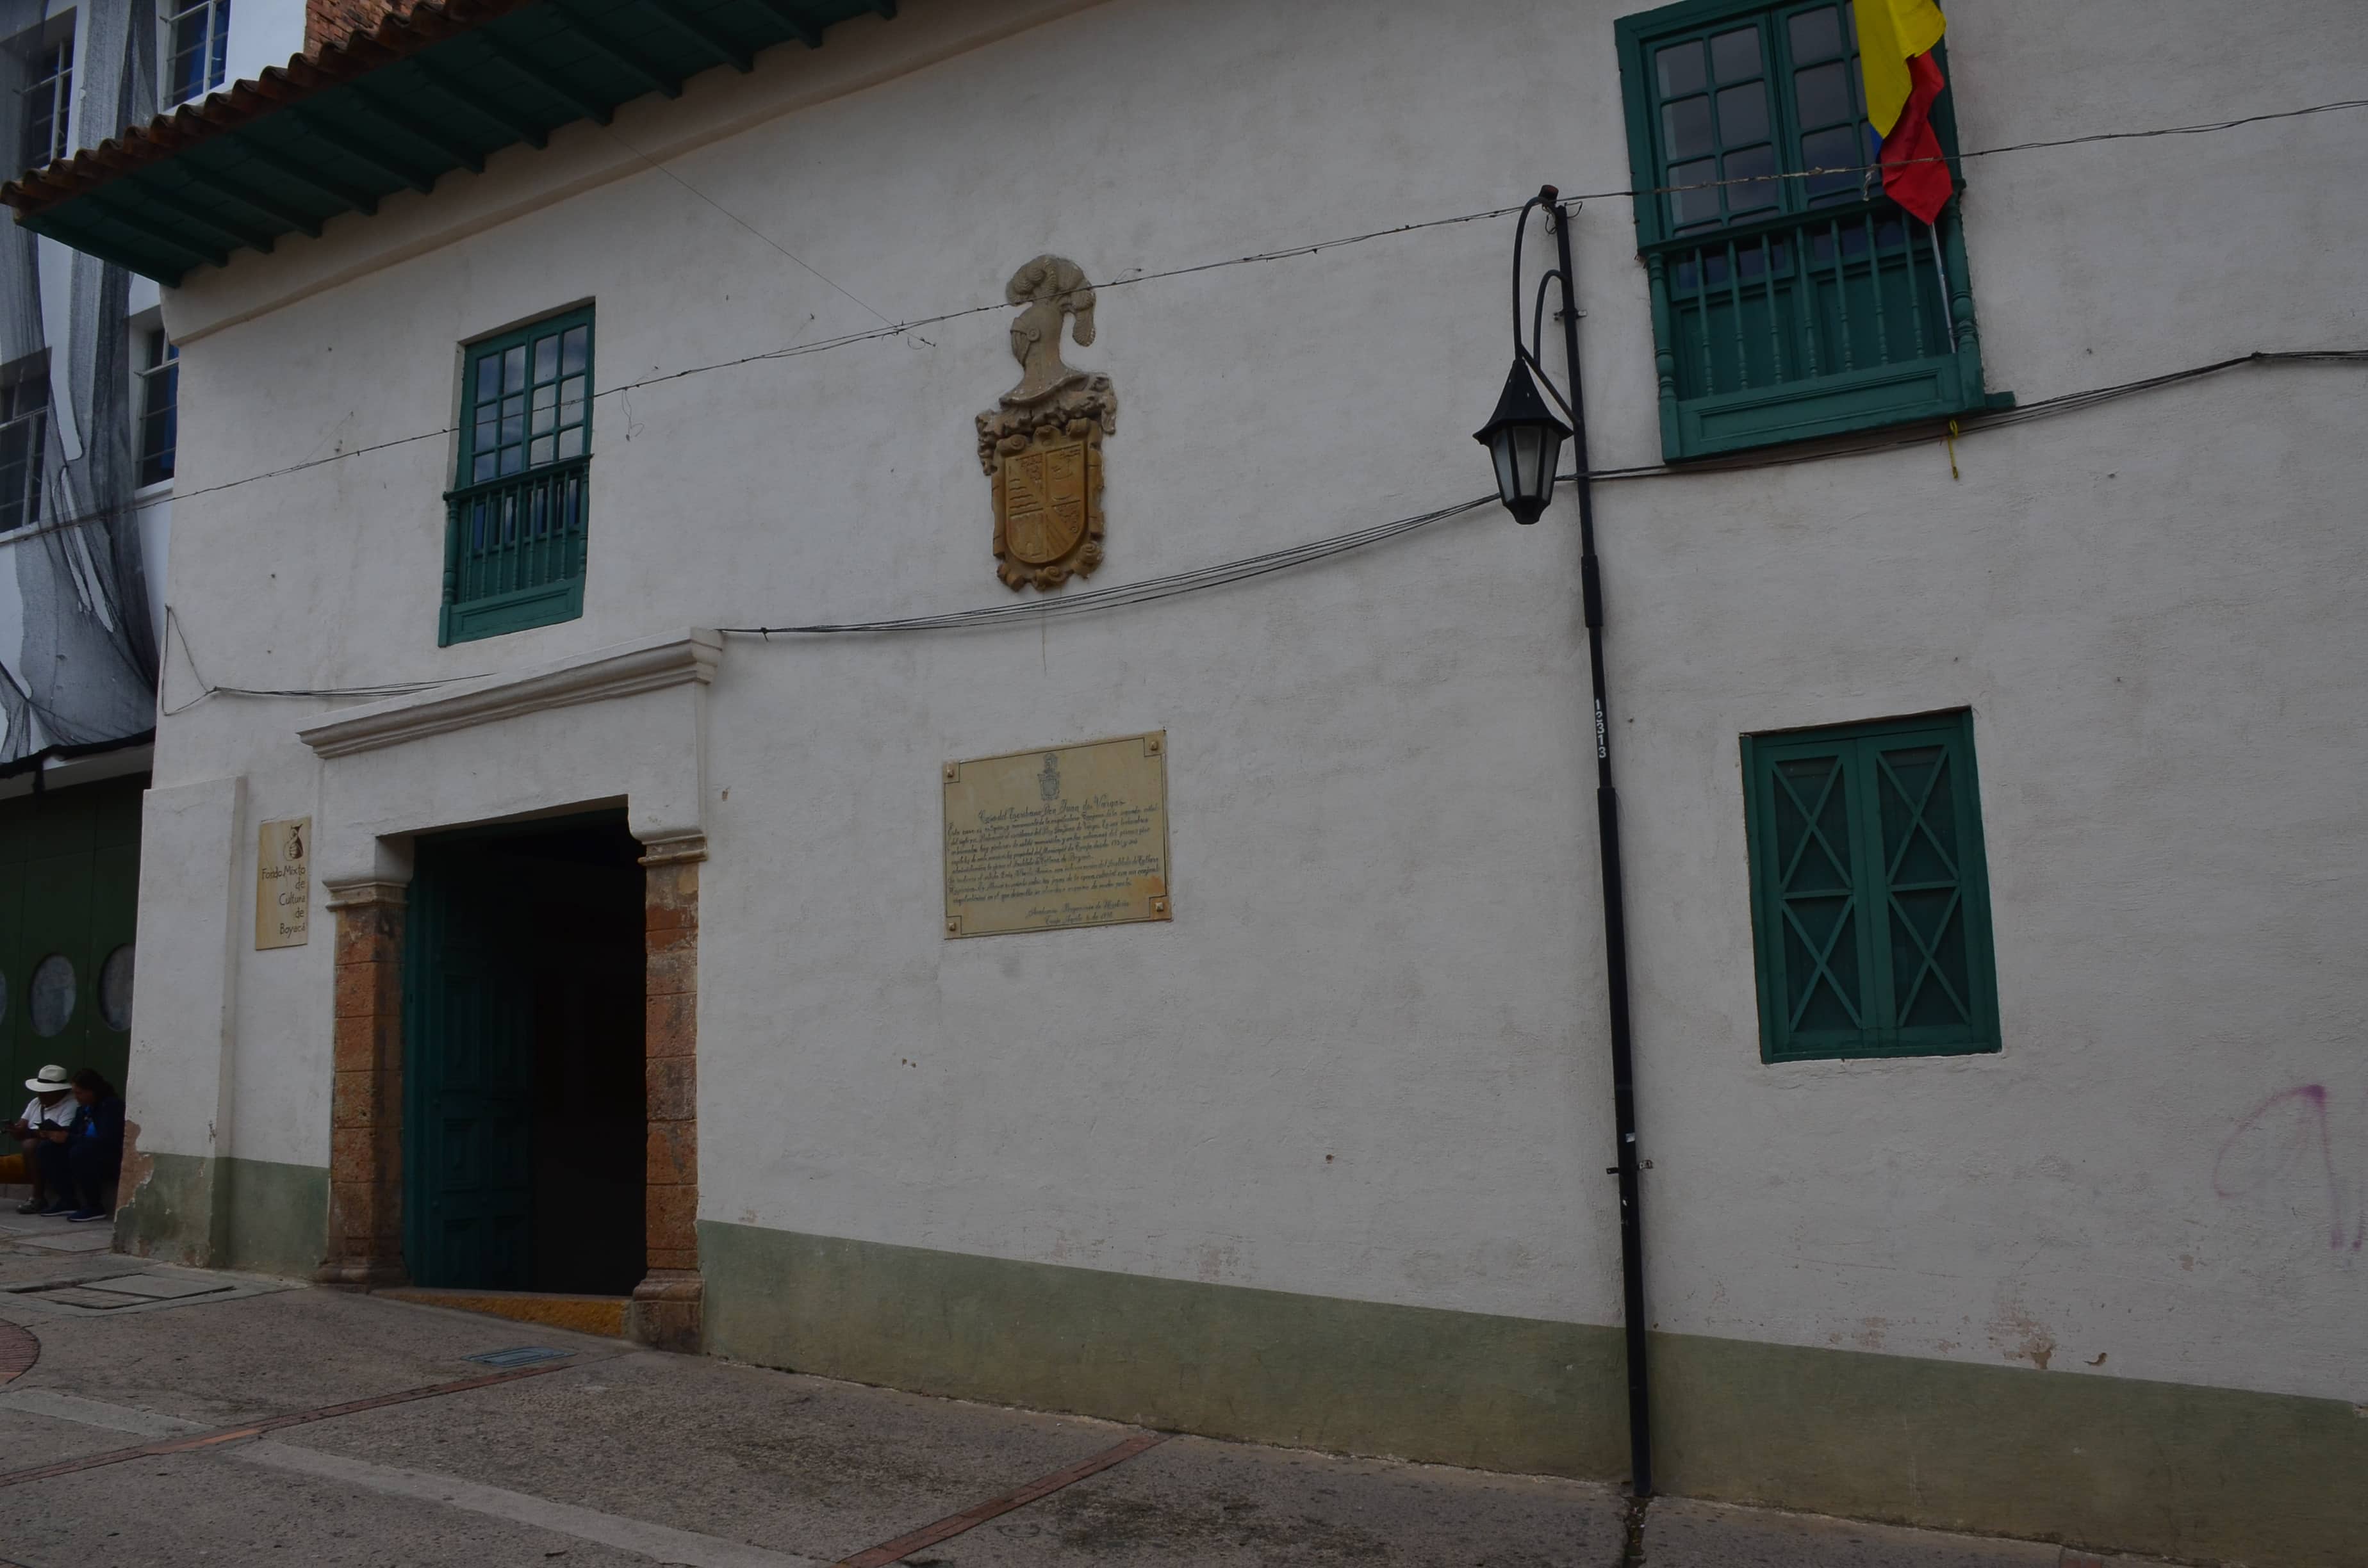 Casa de Don Juan de Vargas in Tunja, Boyacá, Colombia